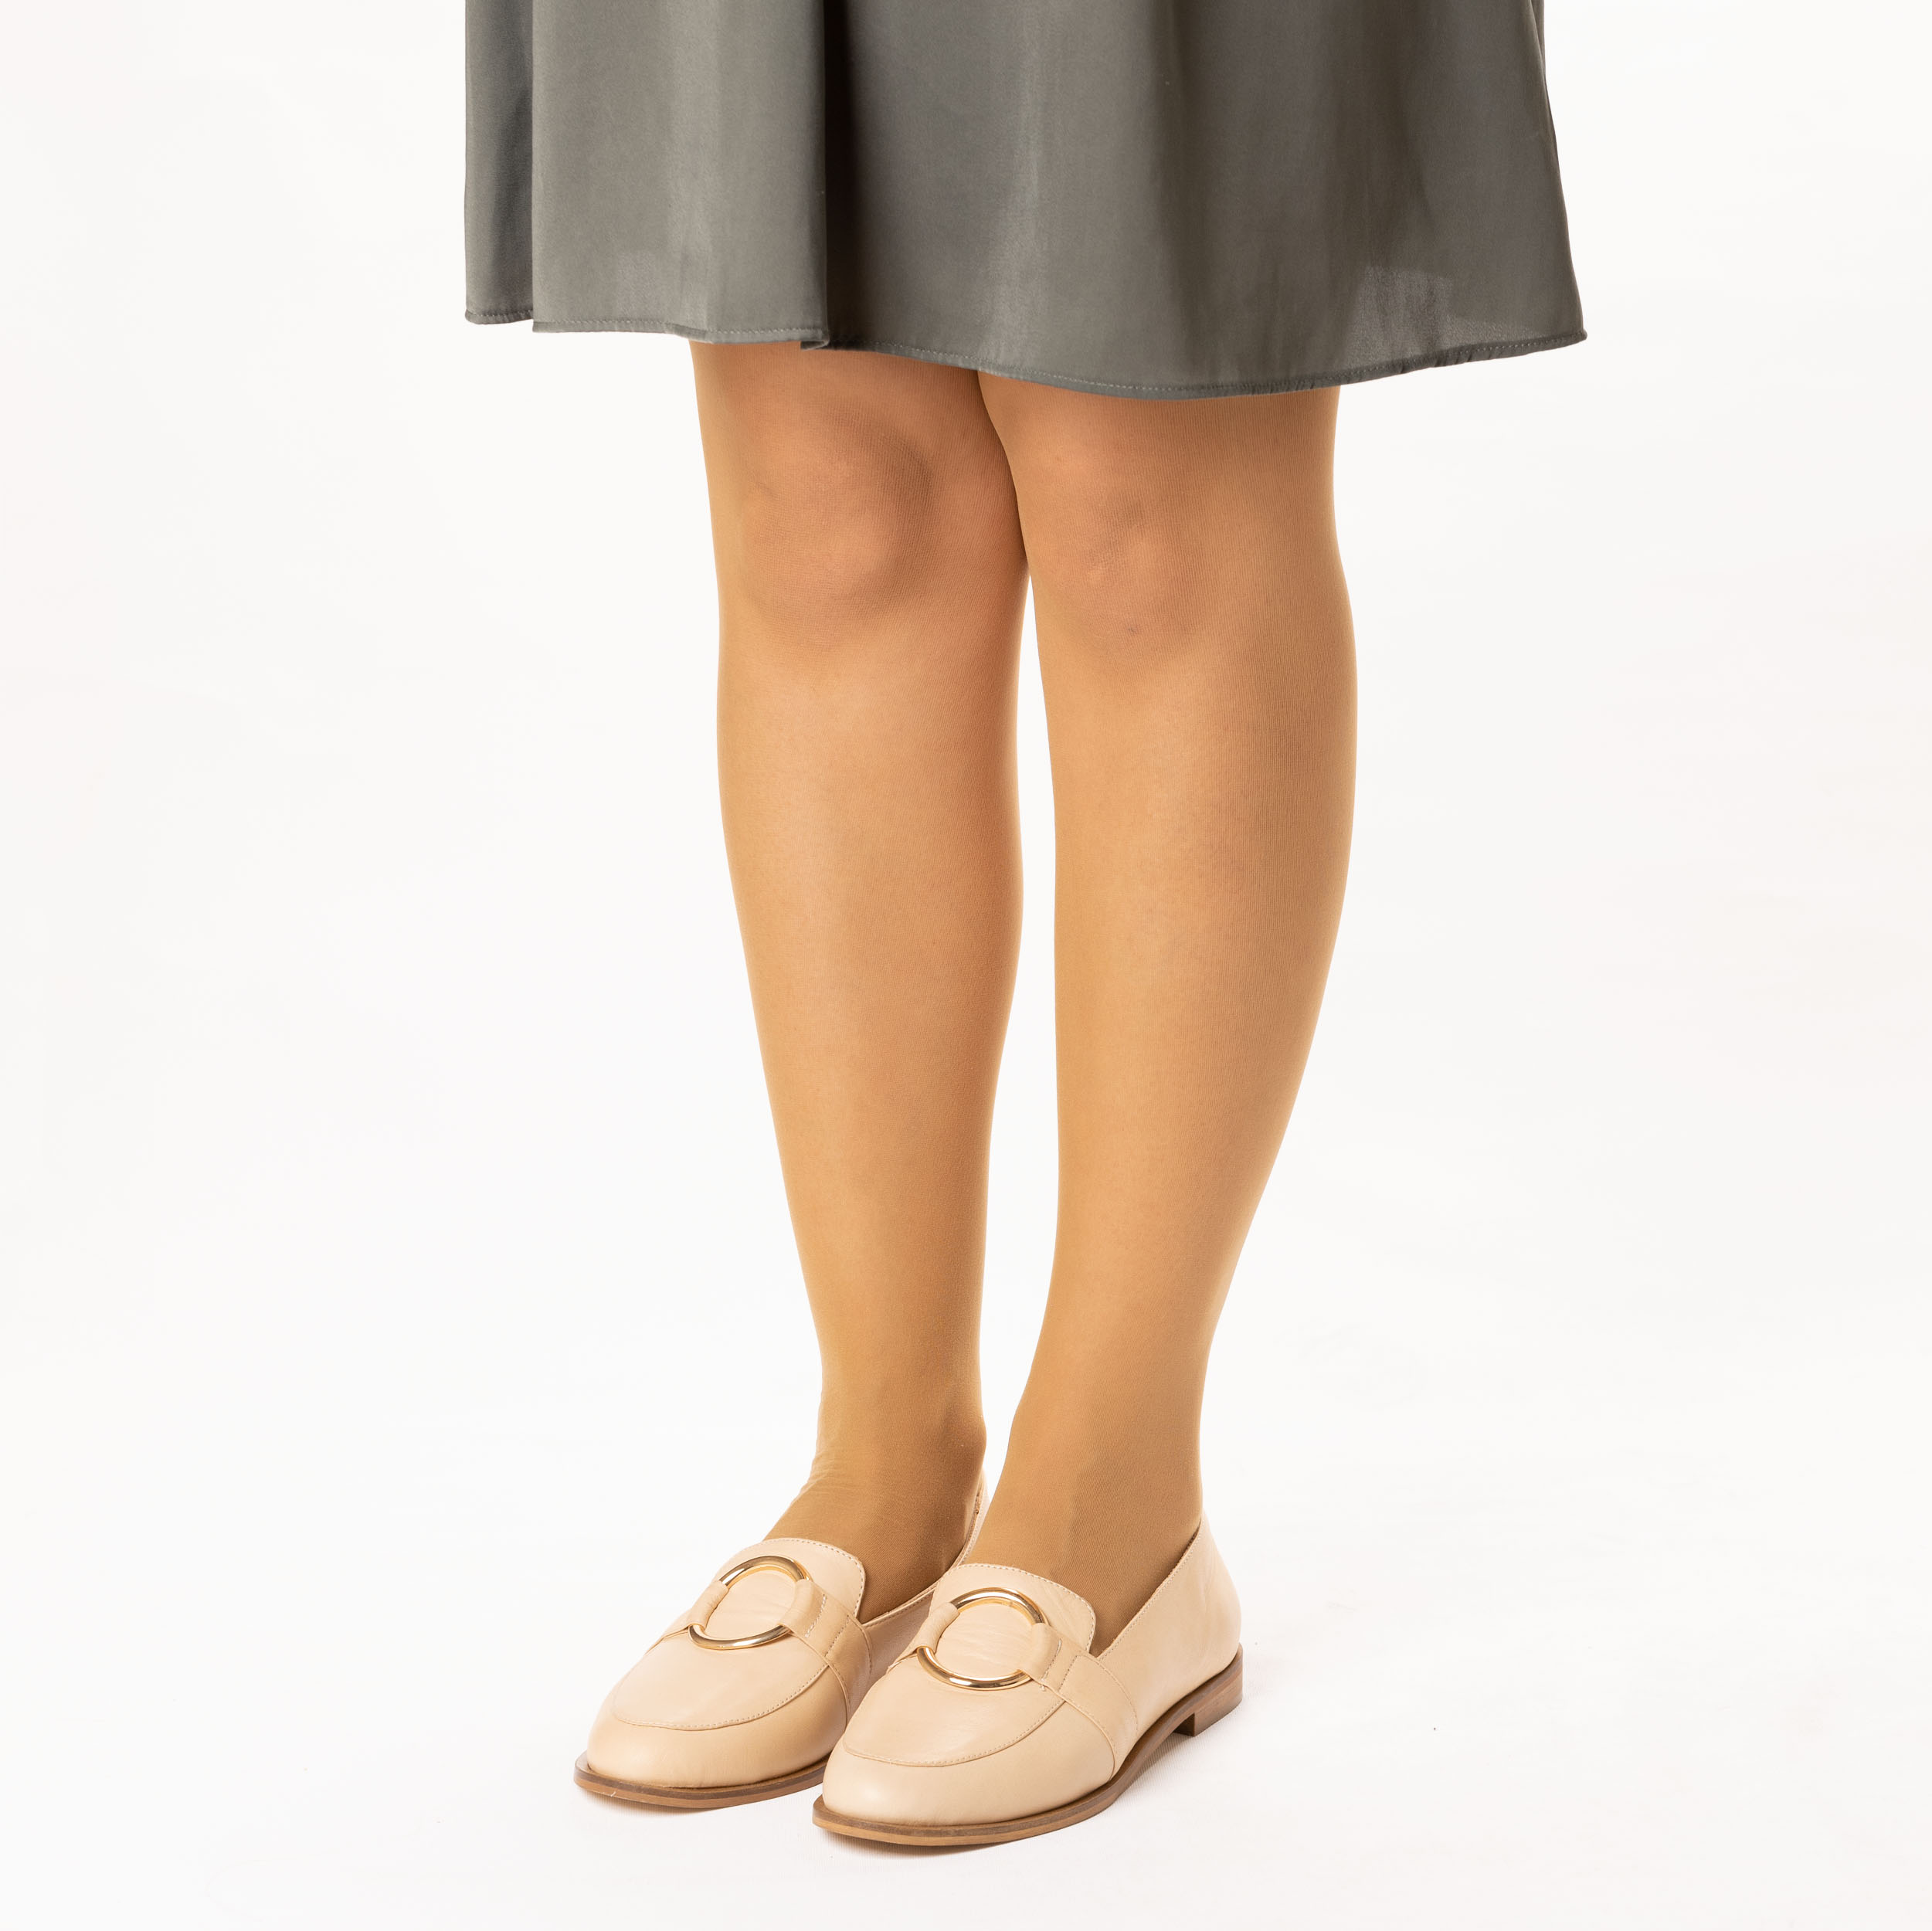 TwoEgoist Kadın Hakiki Deri Günlük Şık Klasik Loafer Babet Ayakkabı, Renk: Bej, Beden: 36